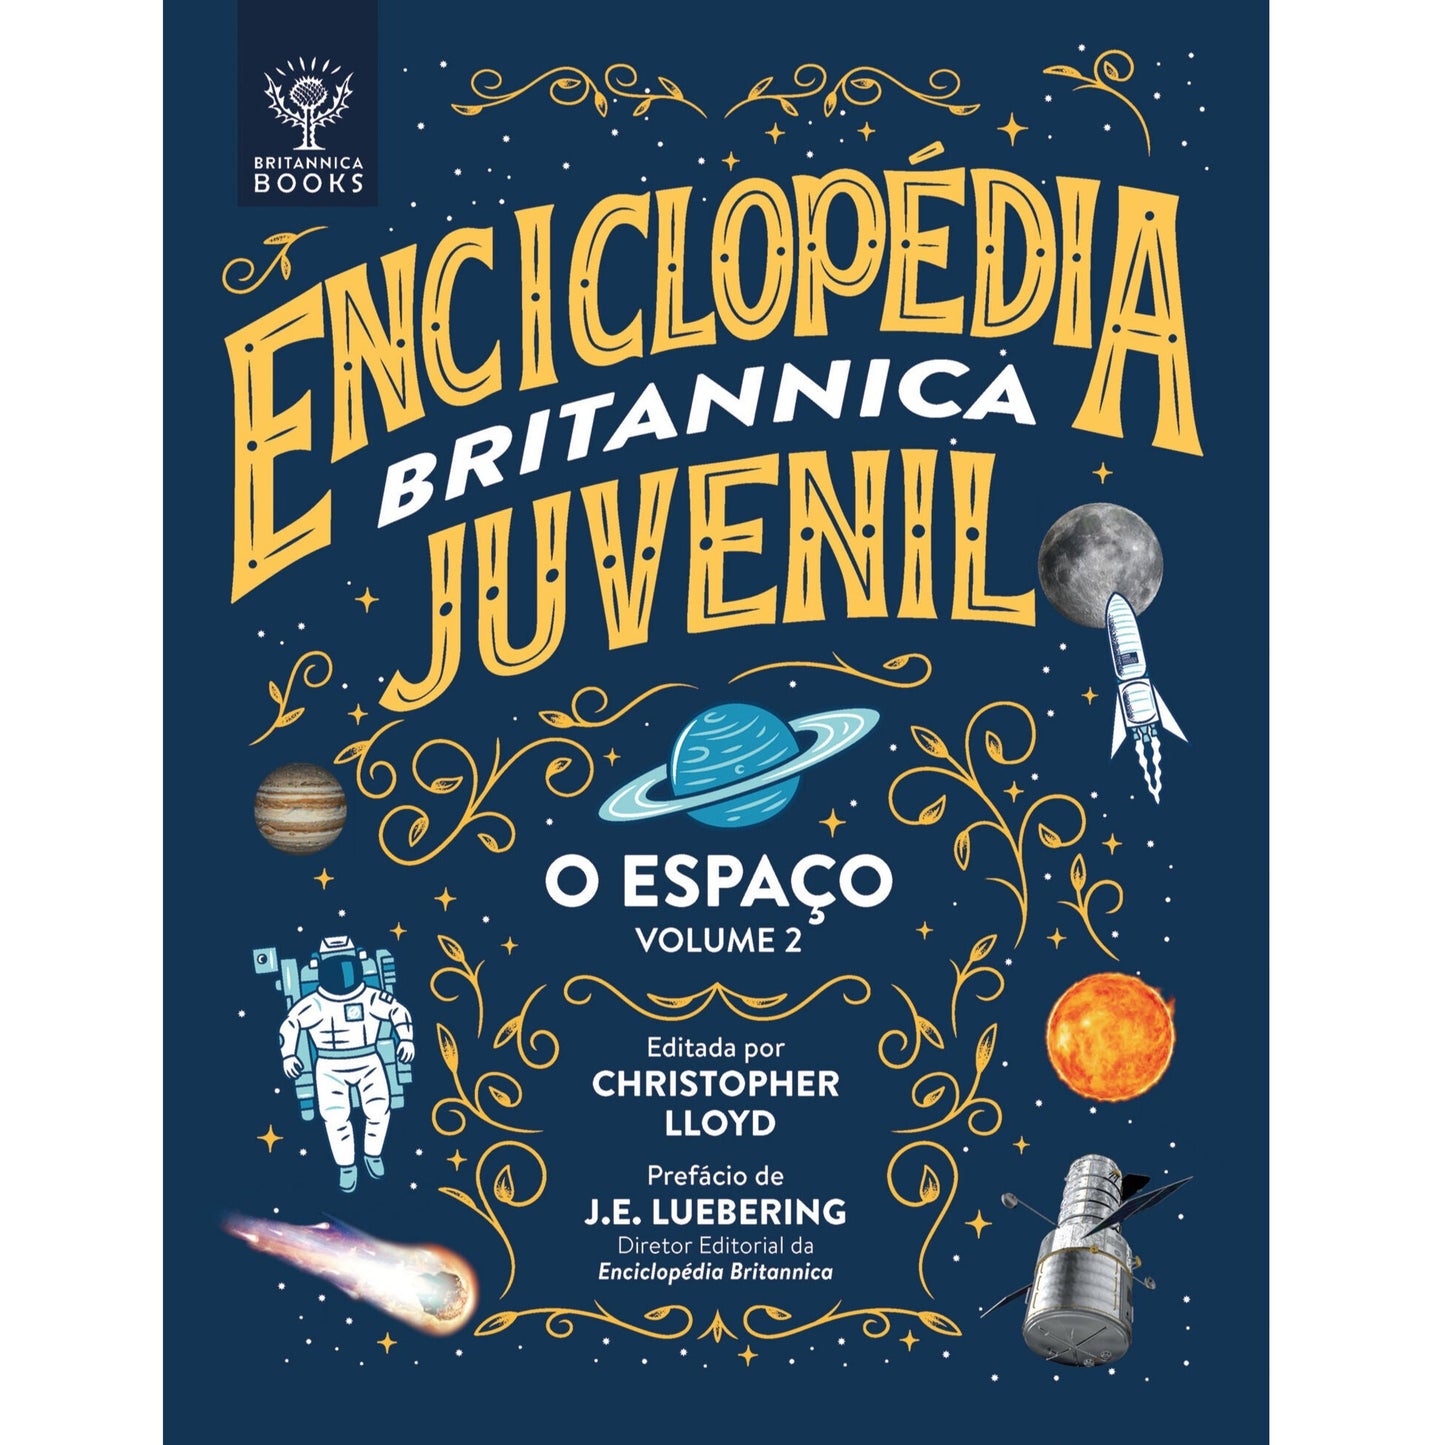 Enciclopédia Britannica Juvenil - Volume 2